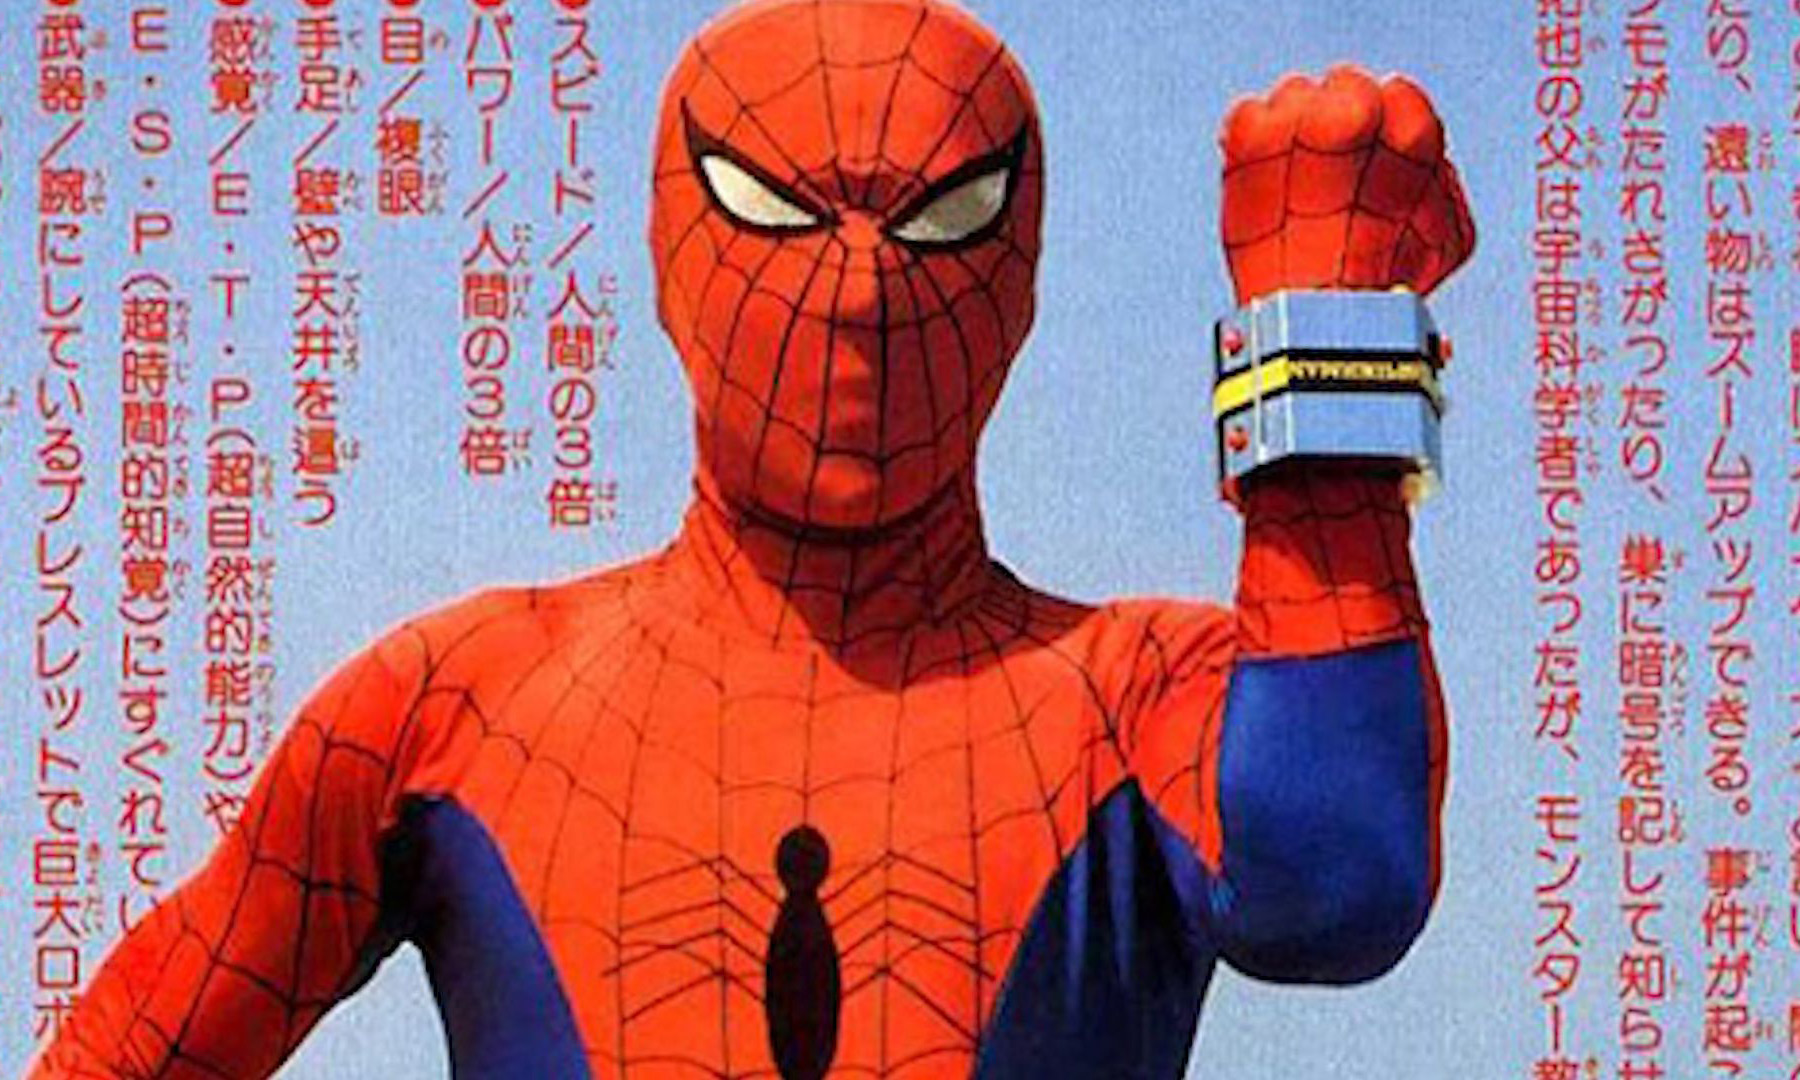 《蜘蛛侠：平行宇宙》主创确认续集将加入 1978 年日本东映特摄蜘蛛侠